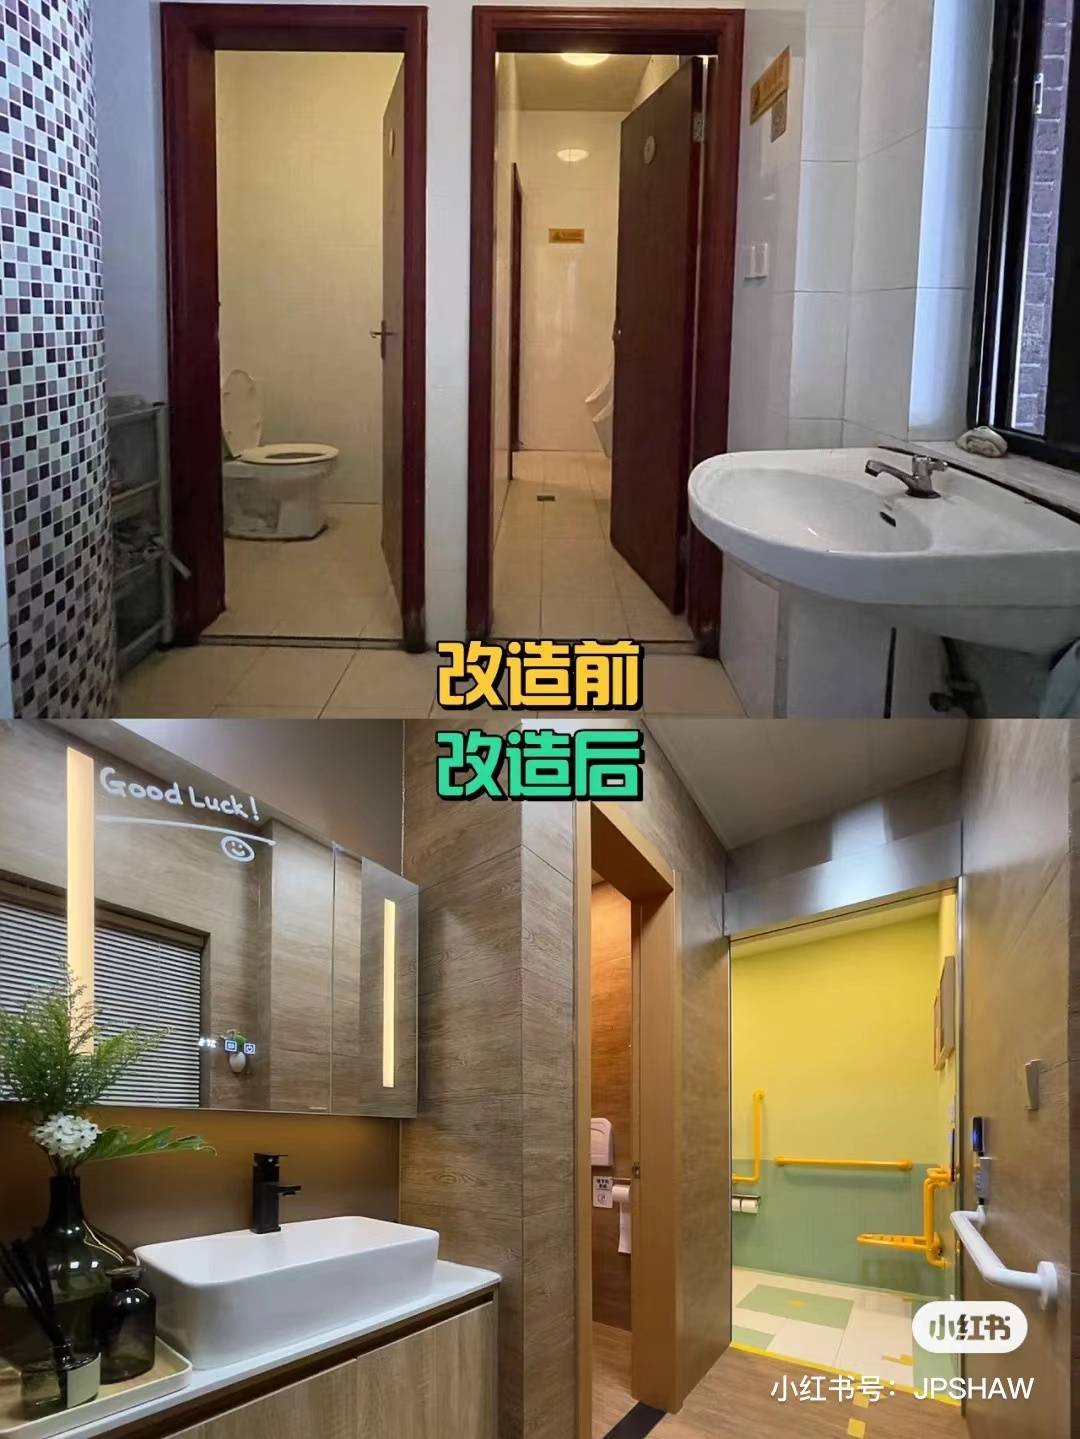 WechatIMG206 - Il bagno pubblico che Xiaohongshu ha trasformato per loro merita di essere “copiato”